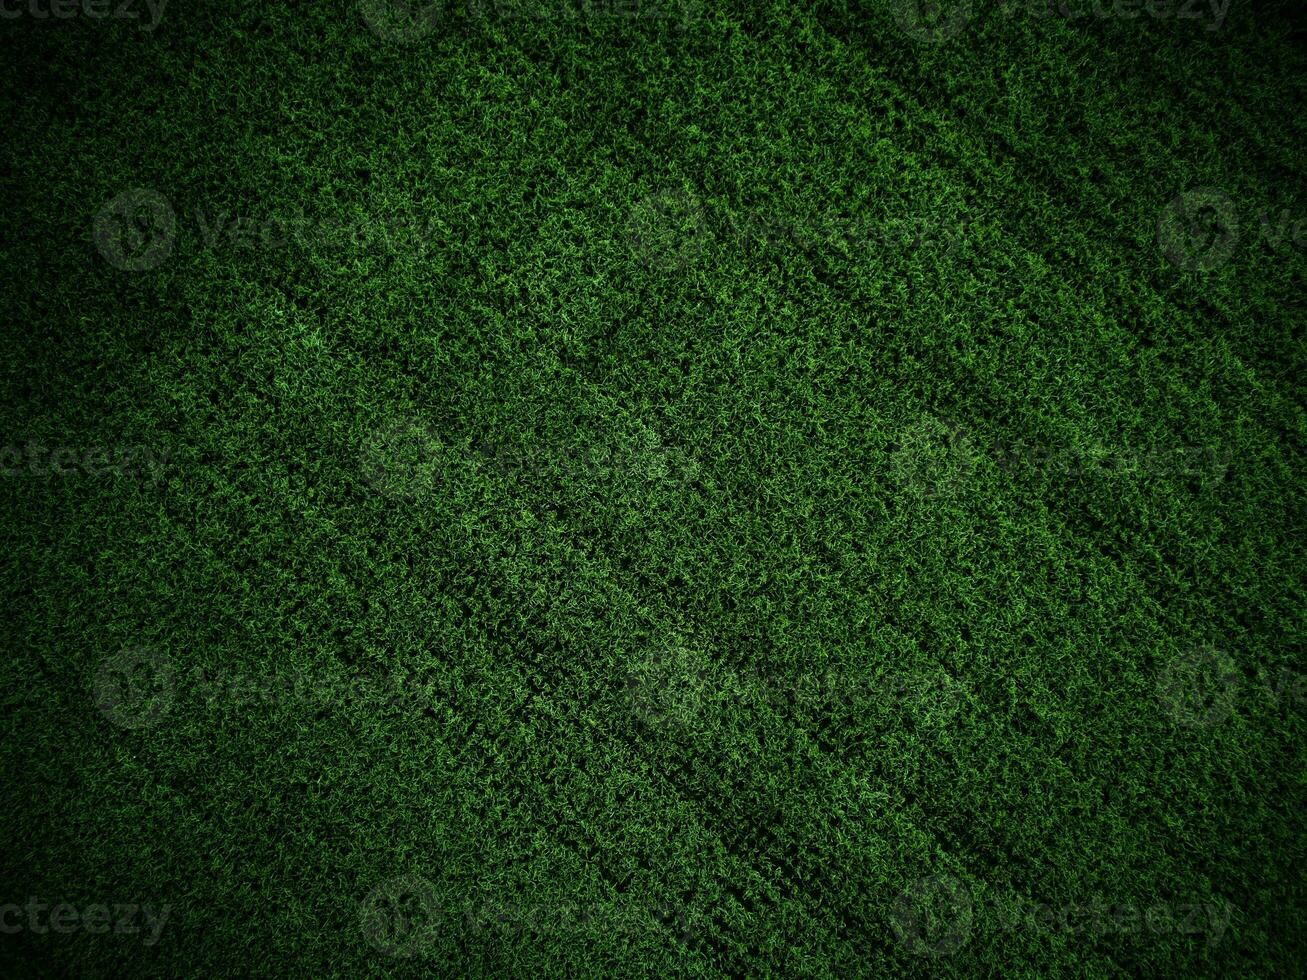 groen gras structuur achtergrond gras tuin concept gebruikt voor maken groen achtergrond Amerikaans voetbal toonhoogte, gras golf, groen gazon patroon getextureerde achtergrond... foto